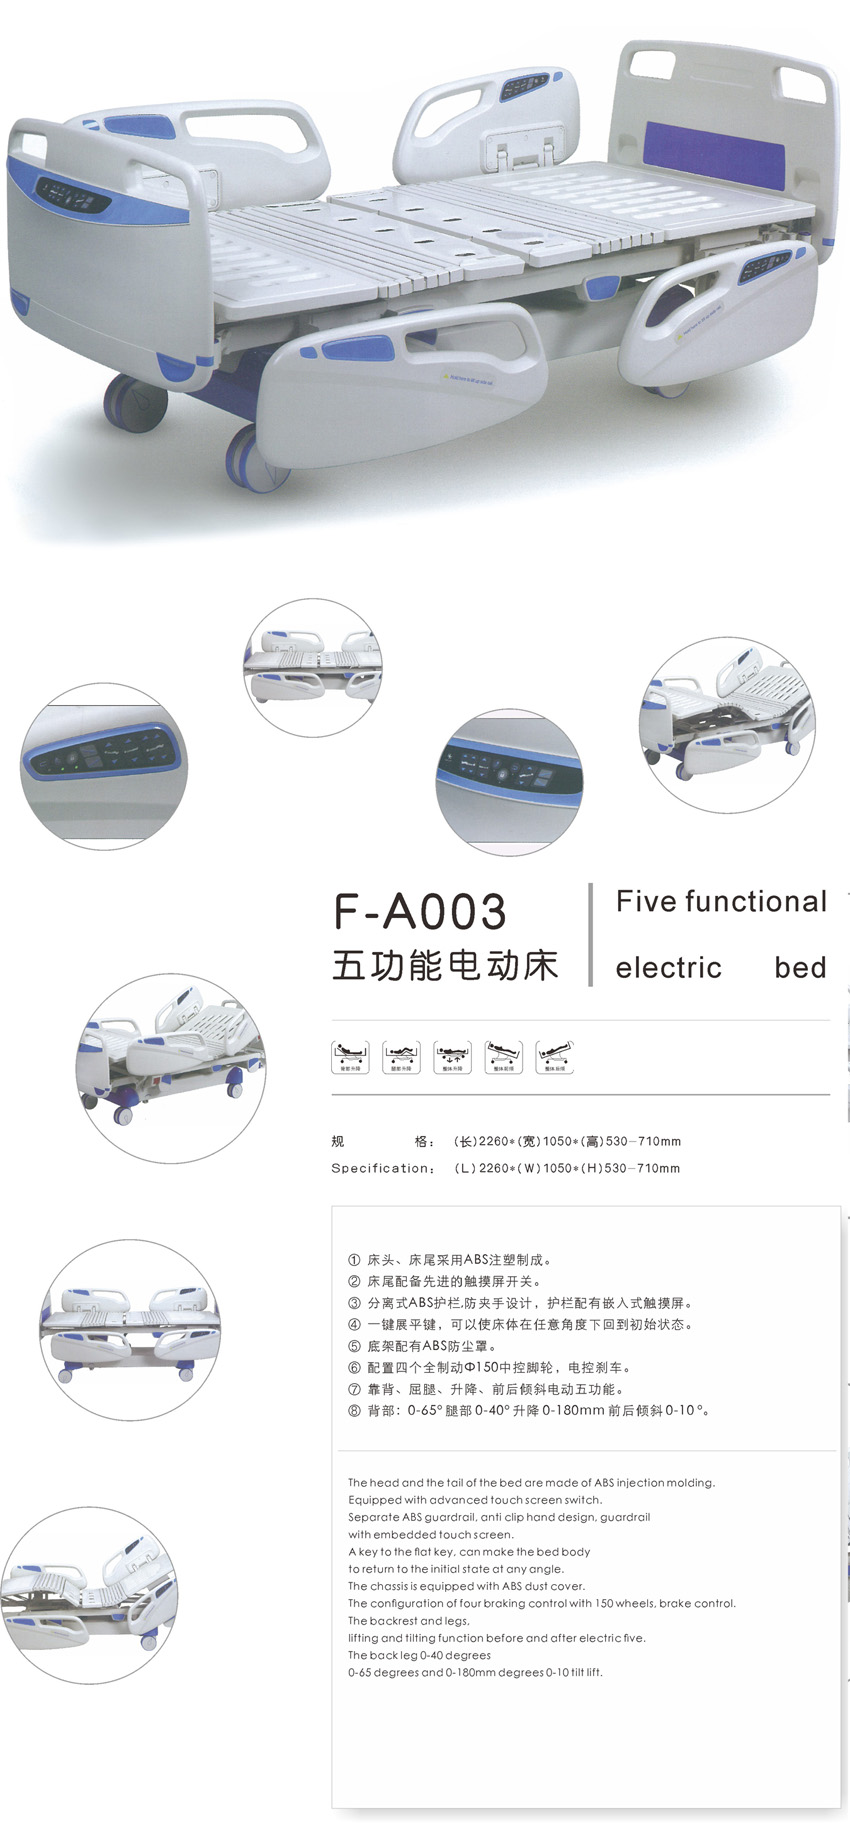 五功能电动床  F-A003